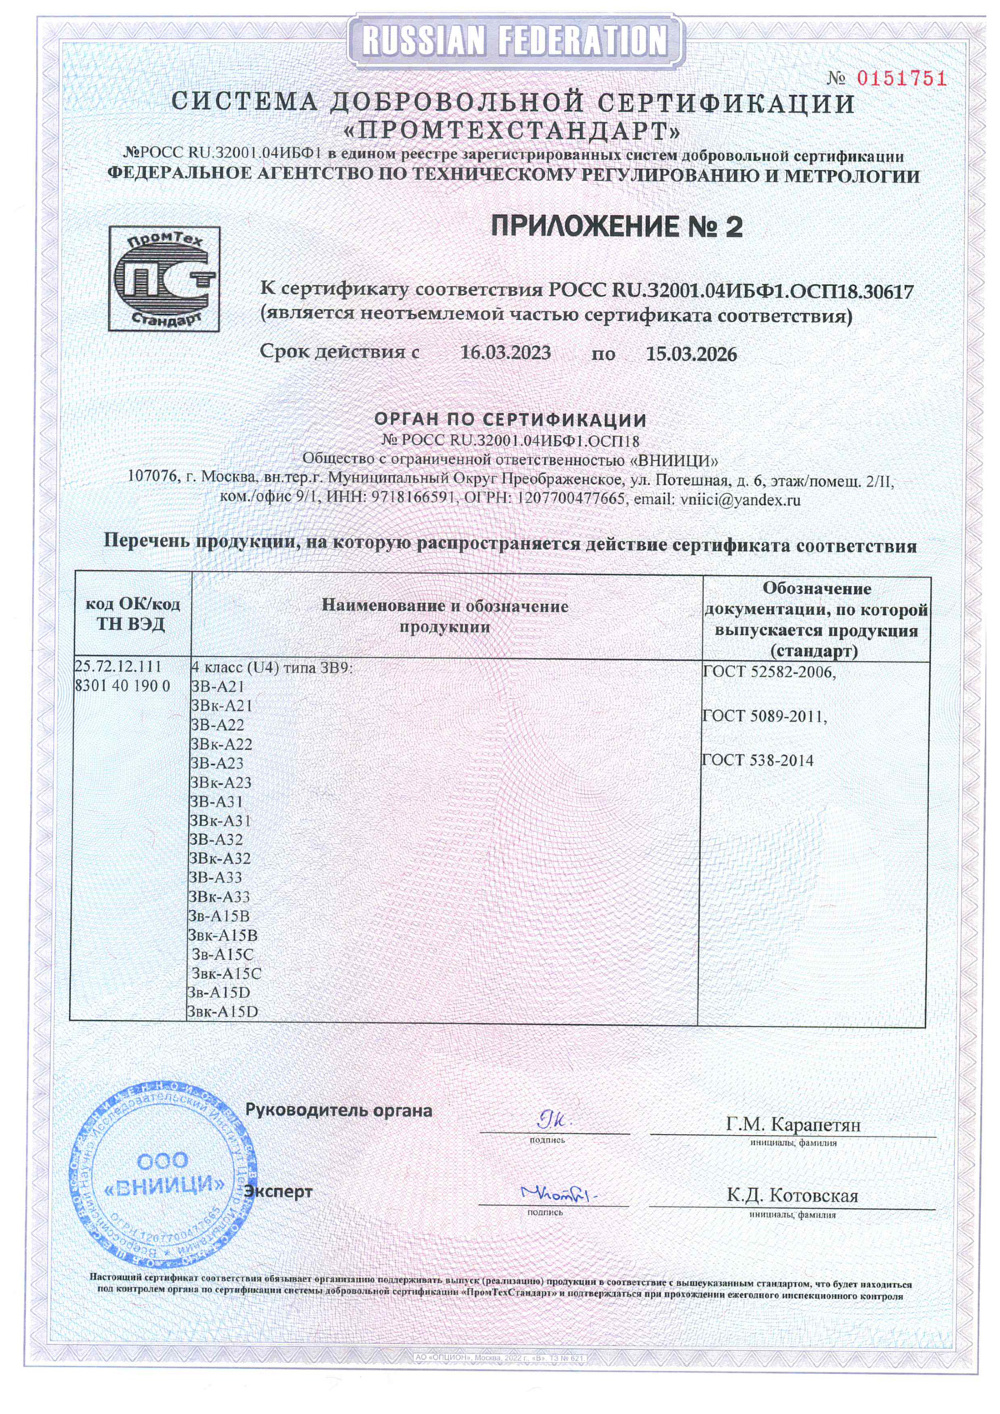 сертификат соответствия для замка А10 стр3